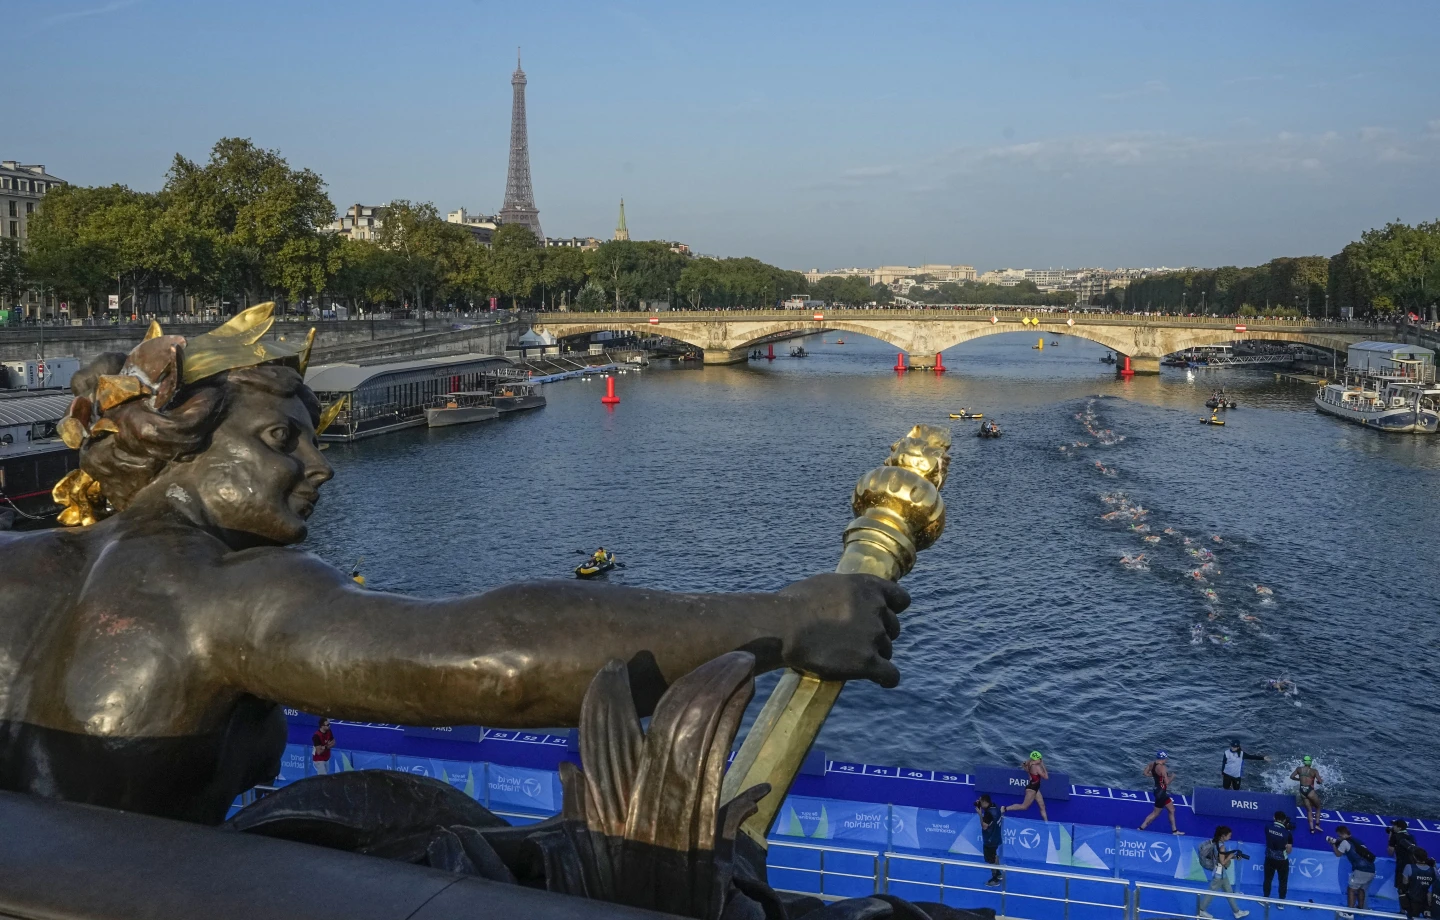 Níveis inseguros de E. coli encontrados no rio Sena, em Paris, menos de 2 meses antes das Olimpíadas